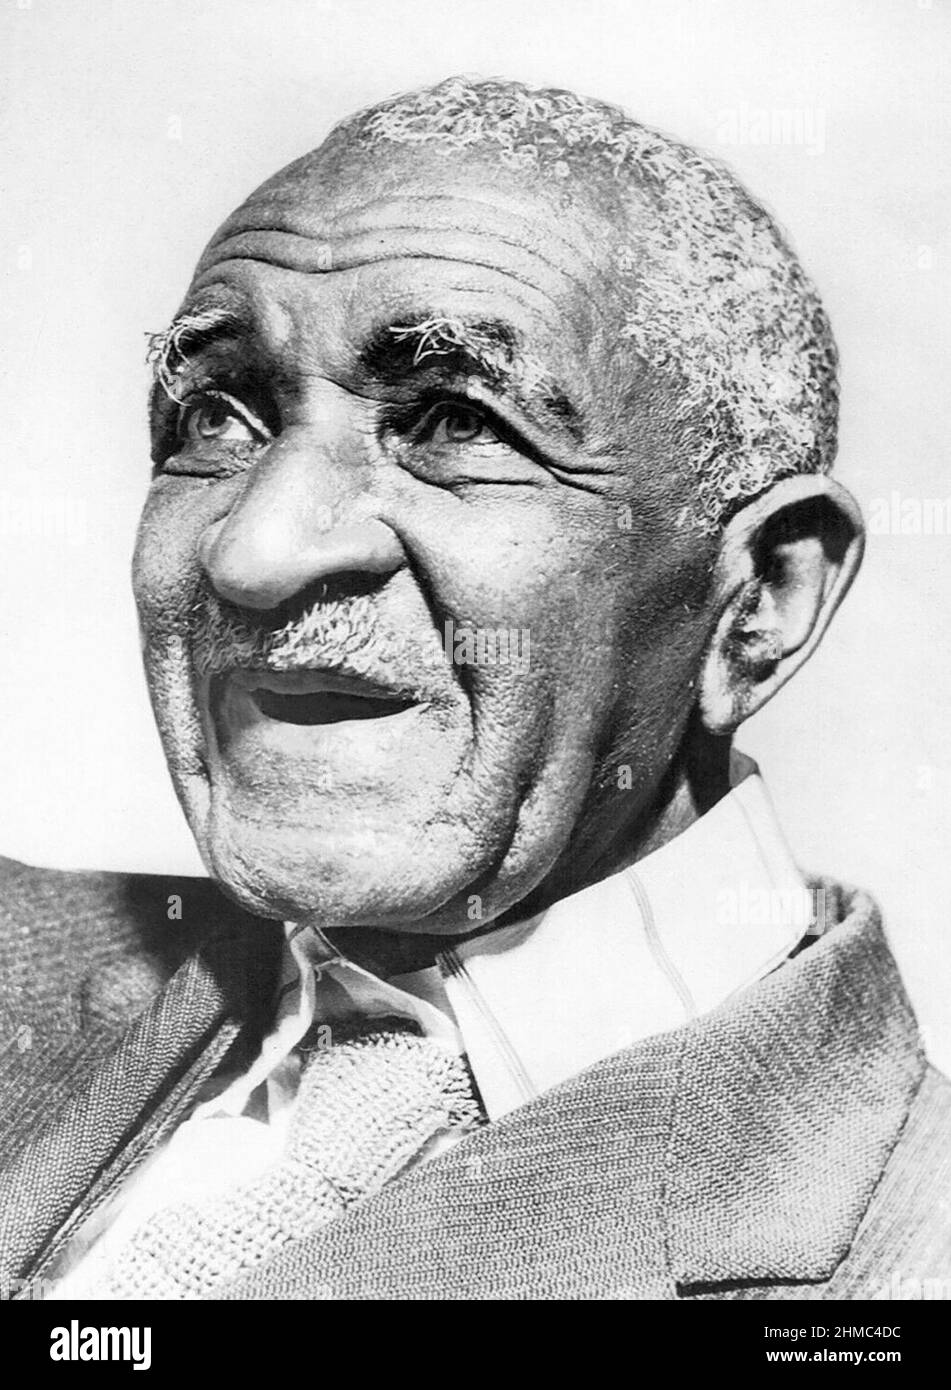 George Washington Carver (c1864-1943), amerikanischer Agrarwissenschaftler, Erfinder und Professor am Tuskegee Institute in Tuskegee, Alabama. Foto: 1943. (USA) Stockfoto